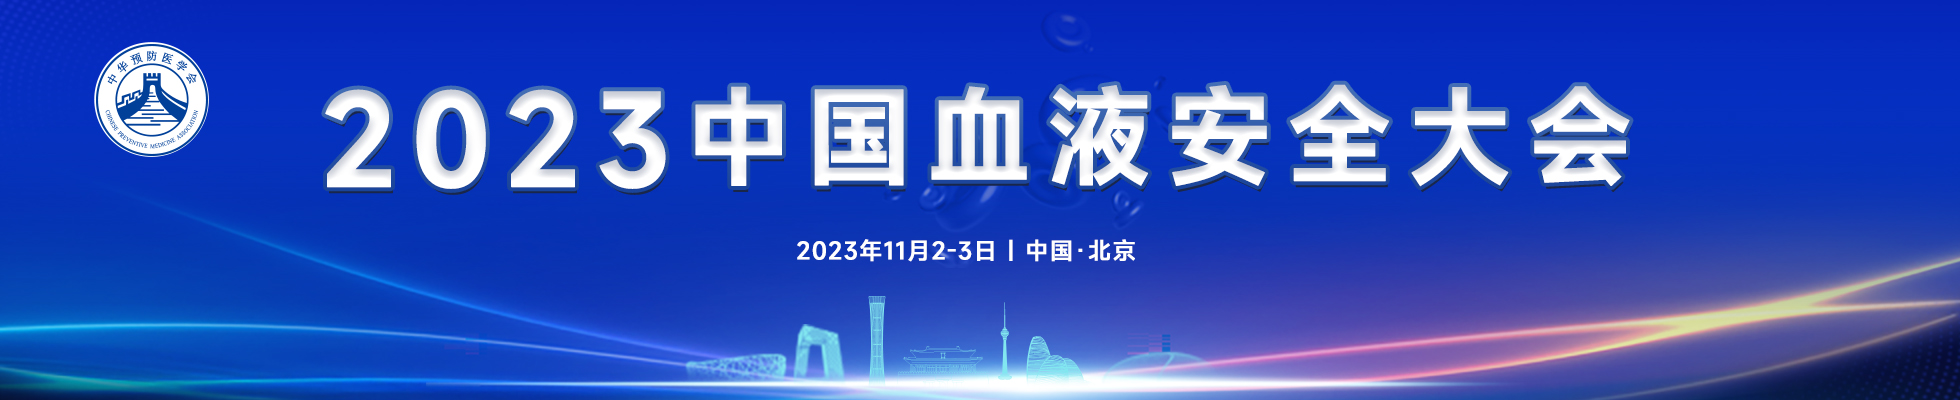 2023年中国血液安全大会